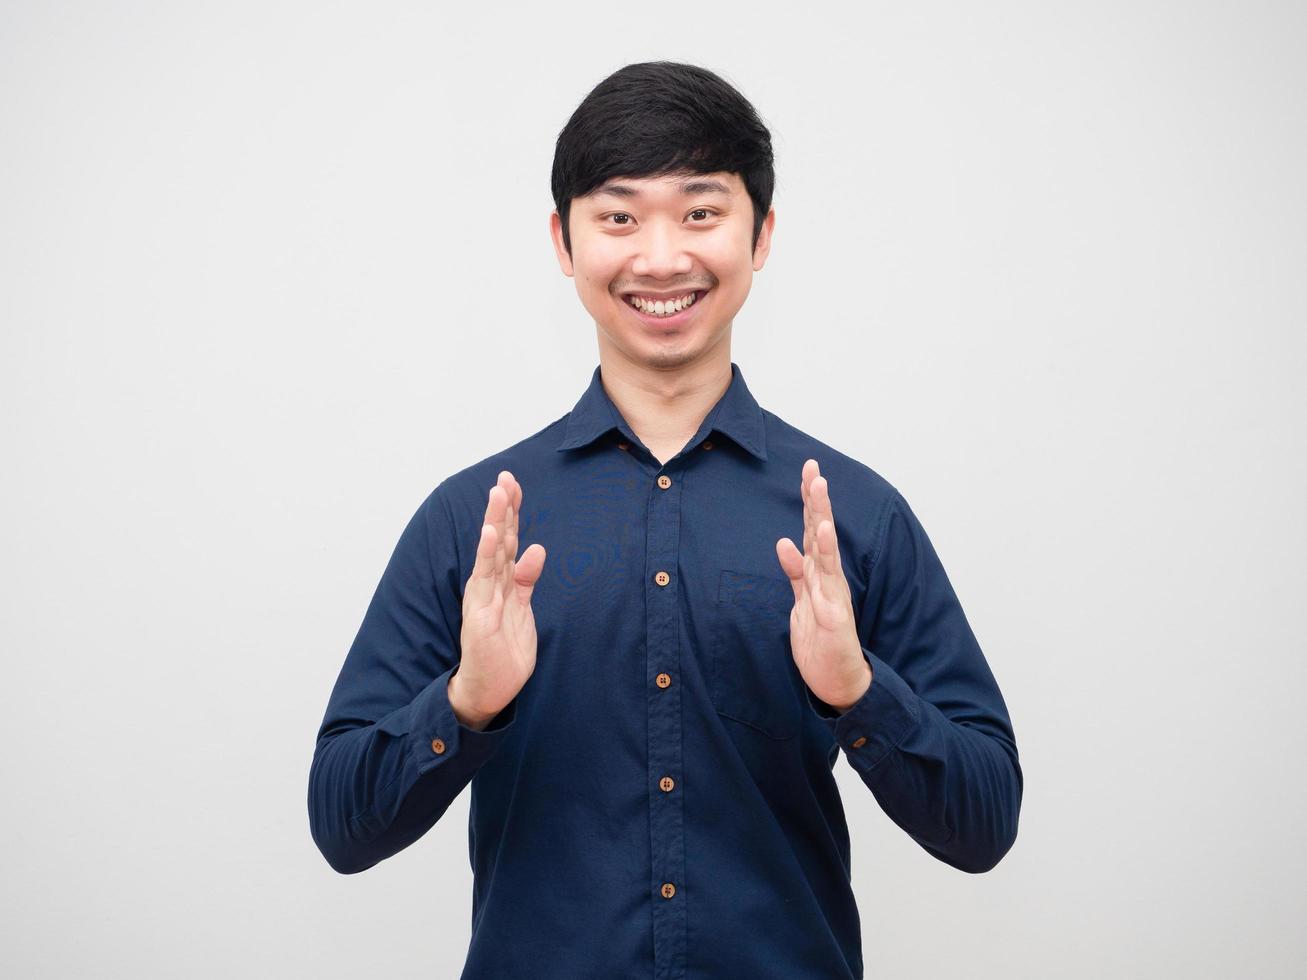 hombre asiático alegre sonrisa cara mostrar mano vacía fondo blanco foto